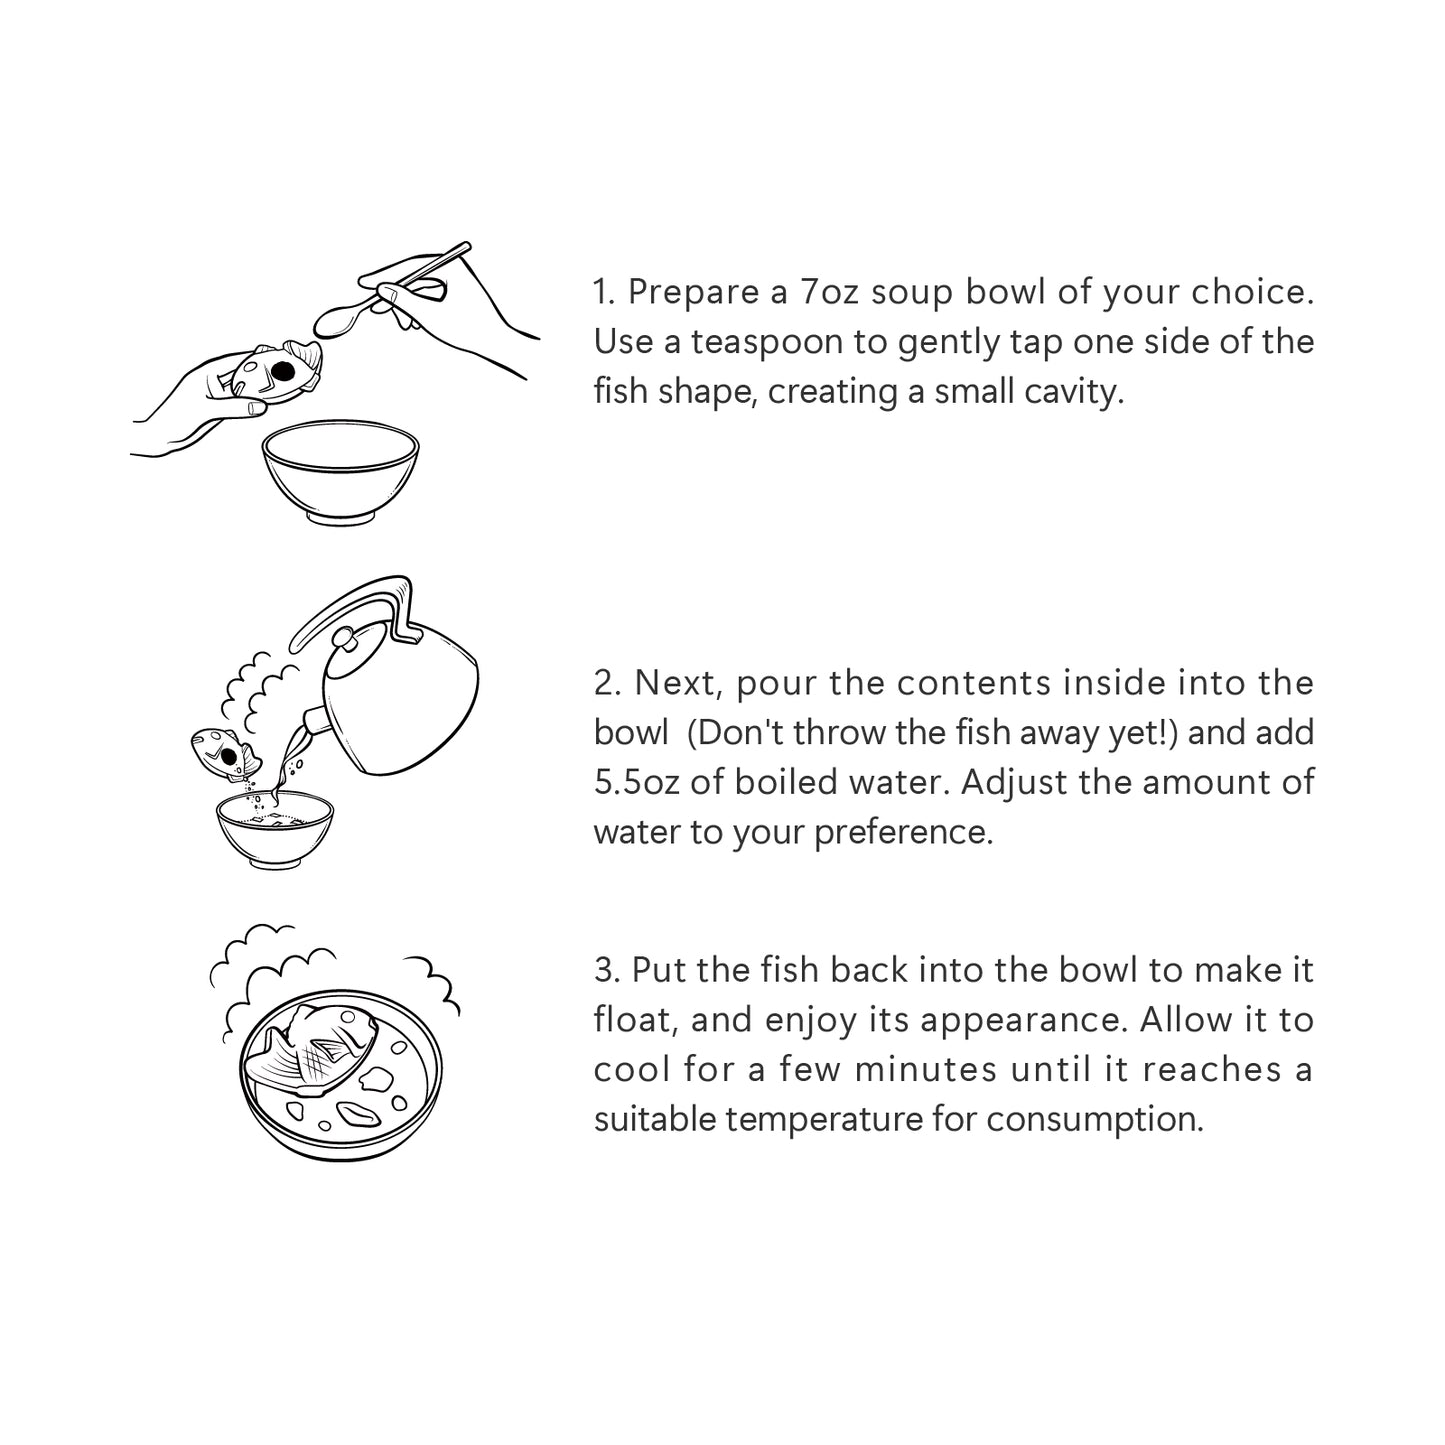 日本の伝統的な3つの風味(松竹梅)のスープのギフトセット　6椀入